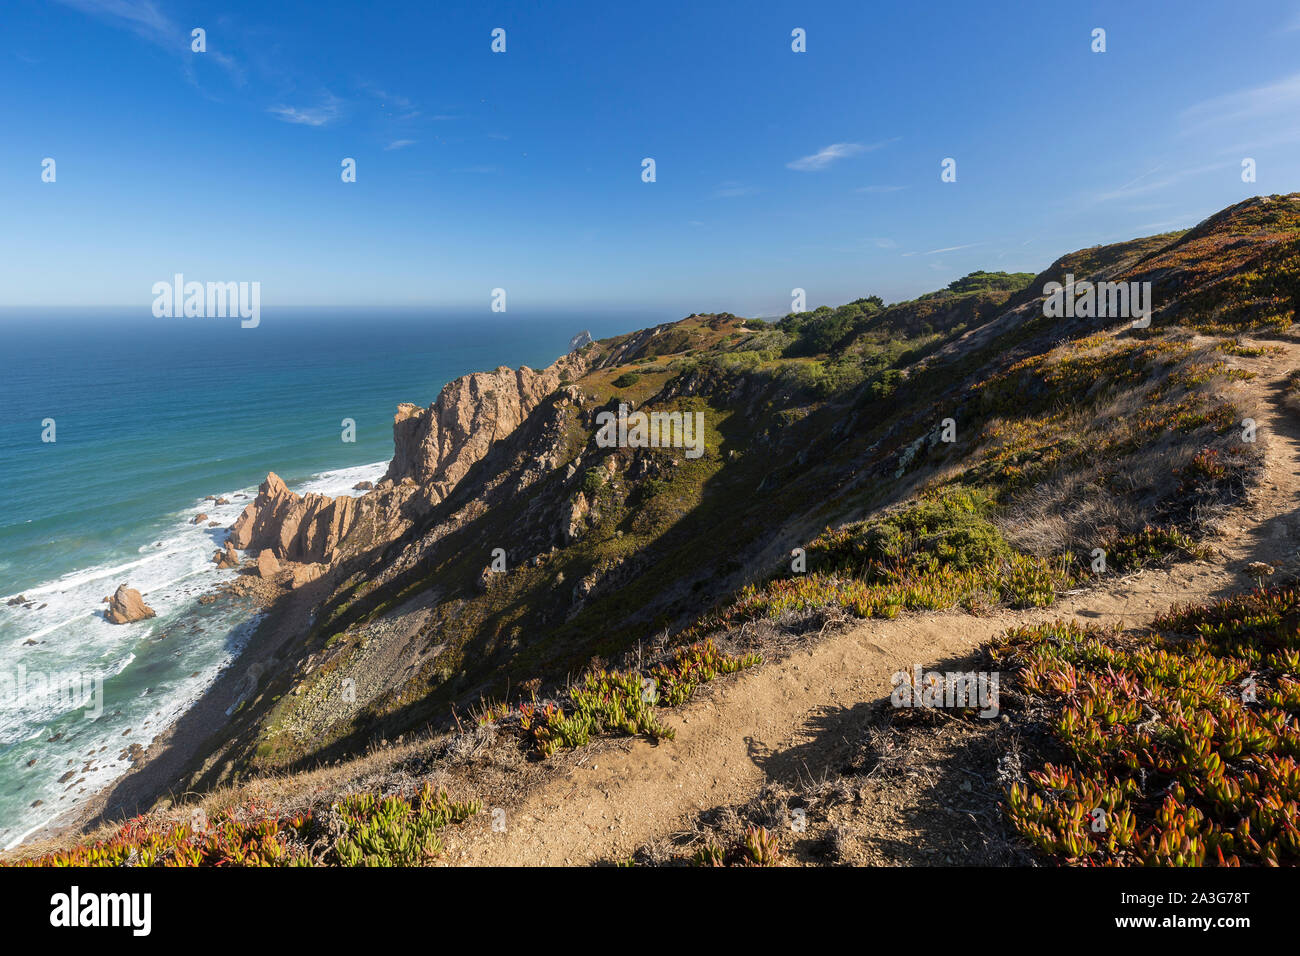 Vue panoramique sur l'océan Atlantique, un littoral accidenté et randonnées sentier près de Cabo da Roca, le point le plus de l'Europe continentale, au Portugal. Banque D'Images